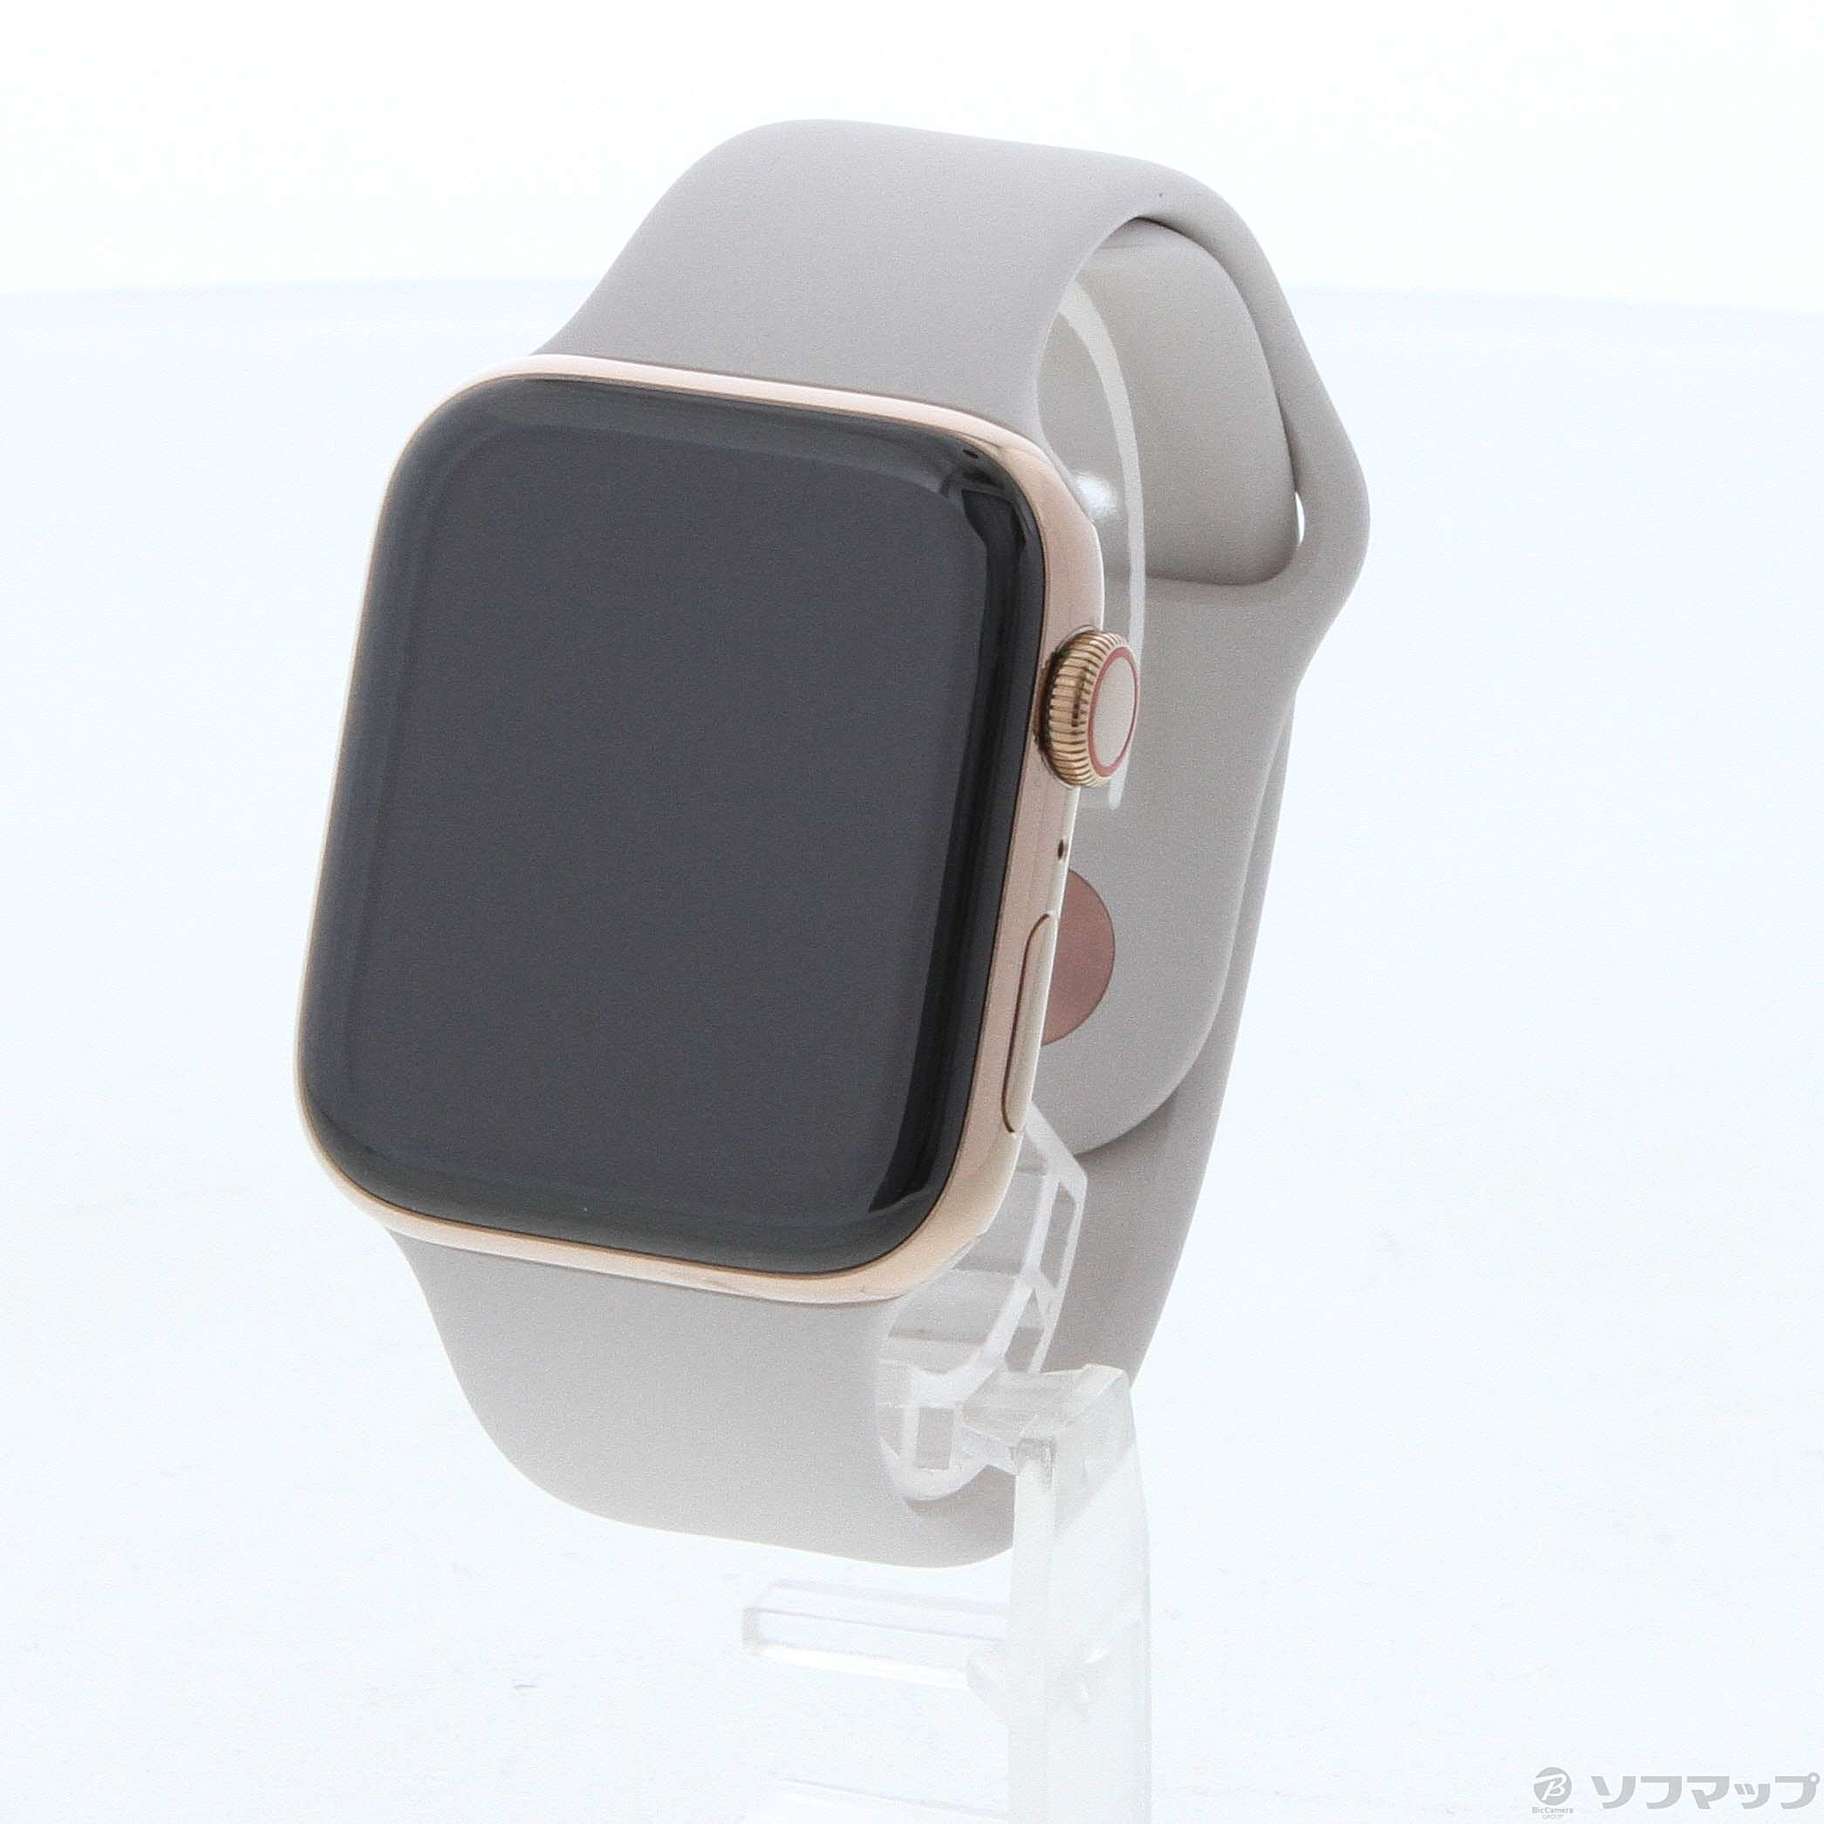 中古】セール対象品 Apple Watch Series 4 GPS + Cellular 44mm ...